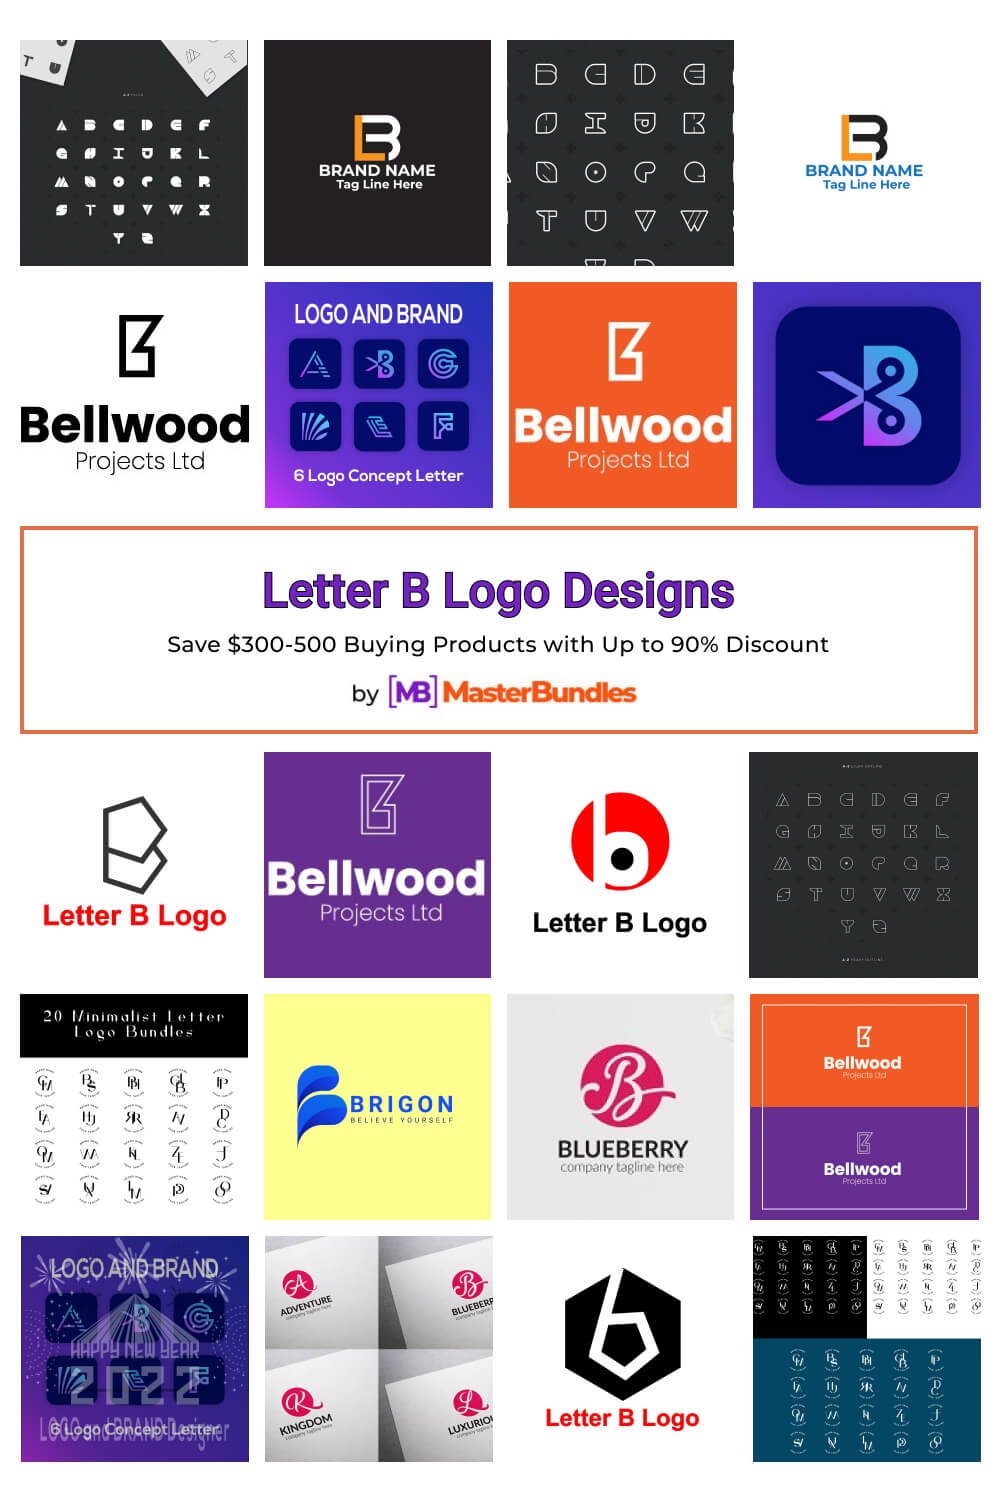 letter b logo designs pinterest image.